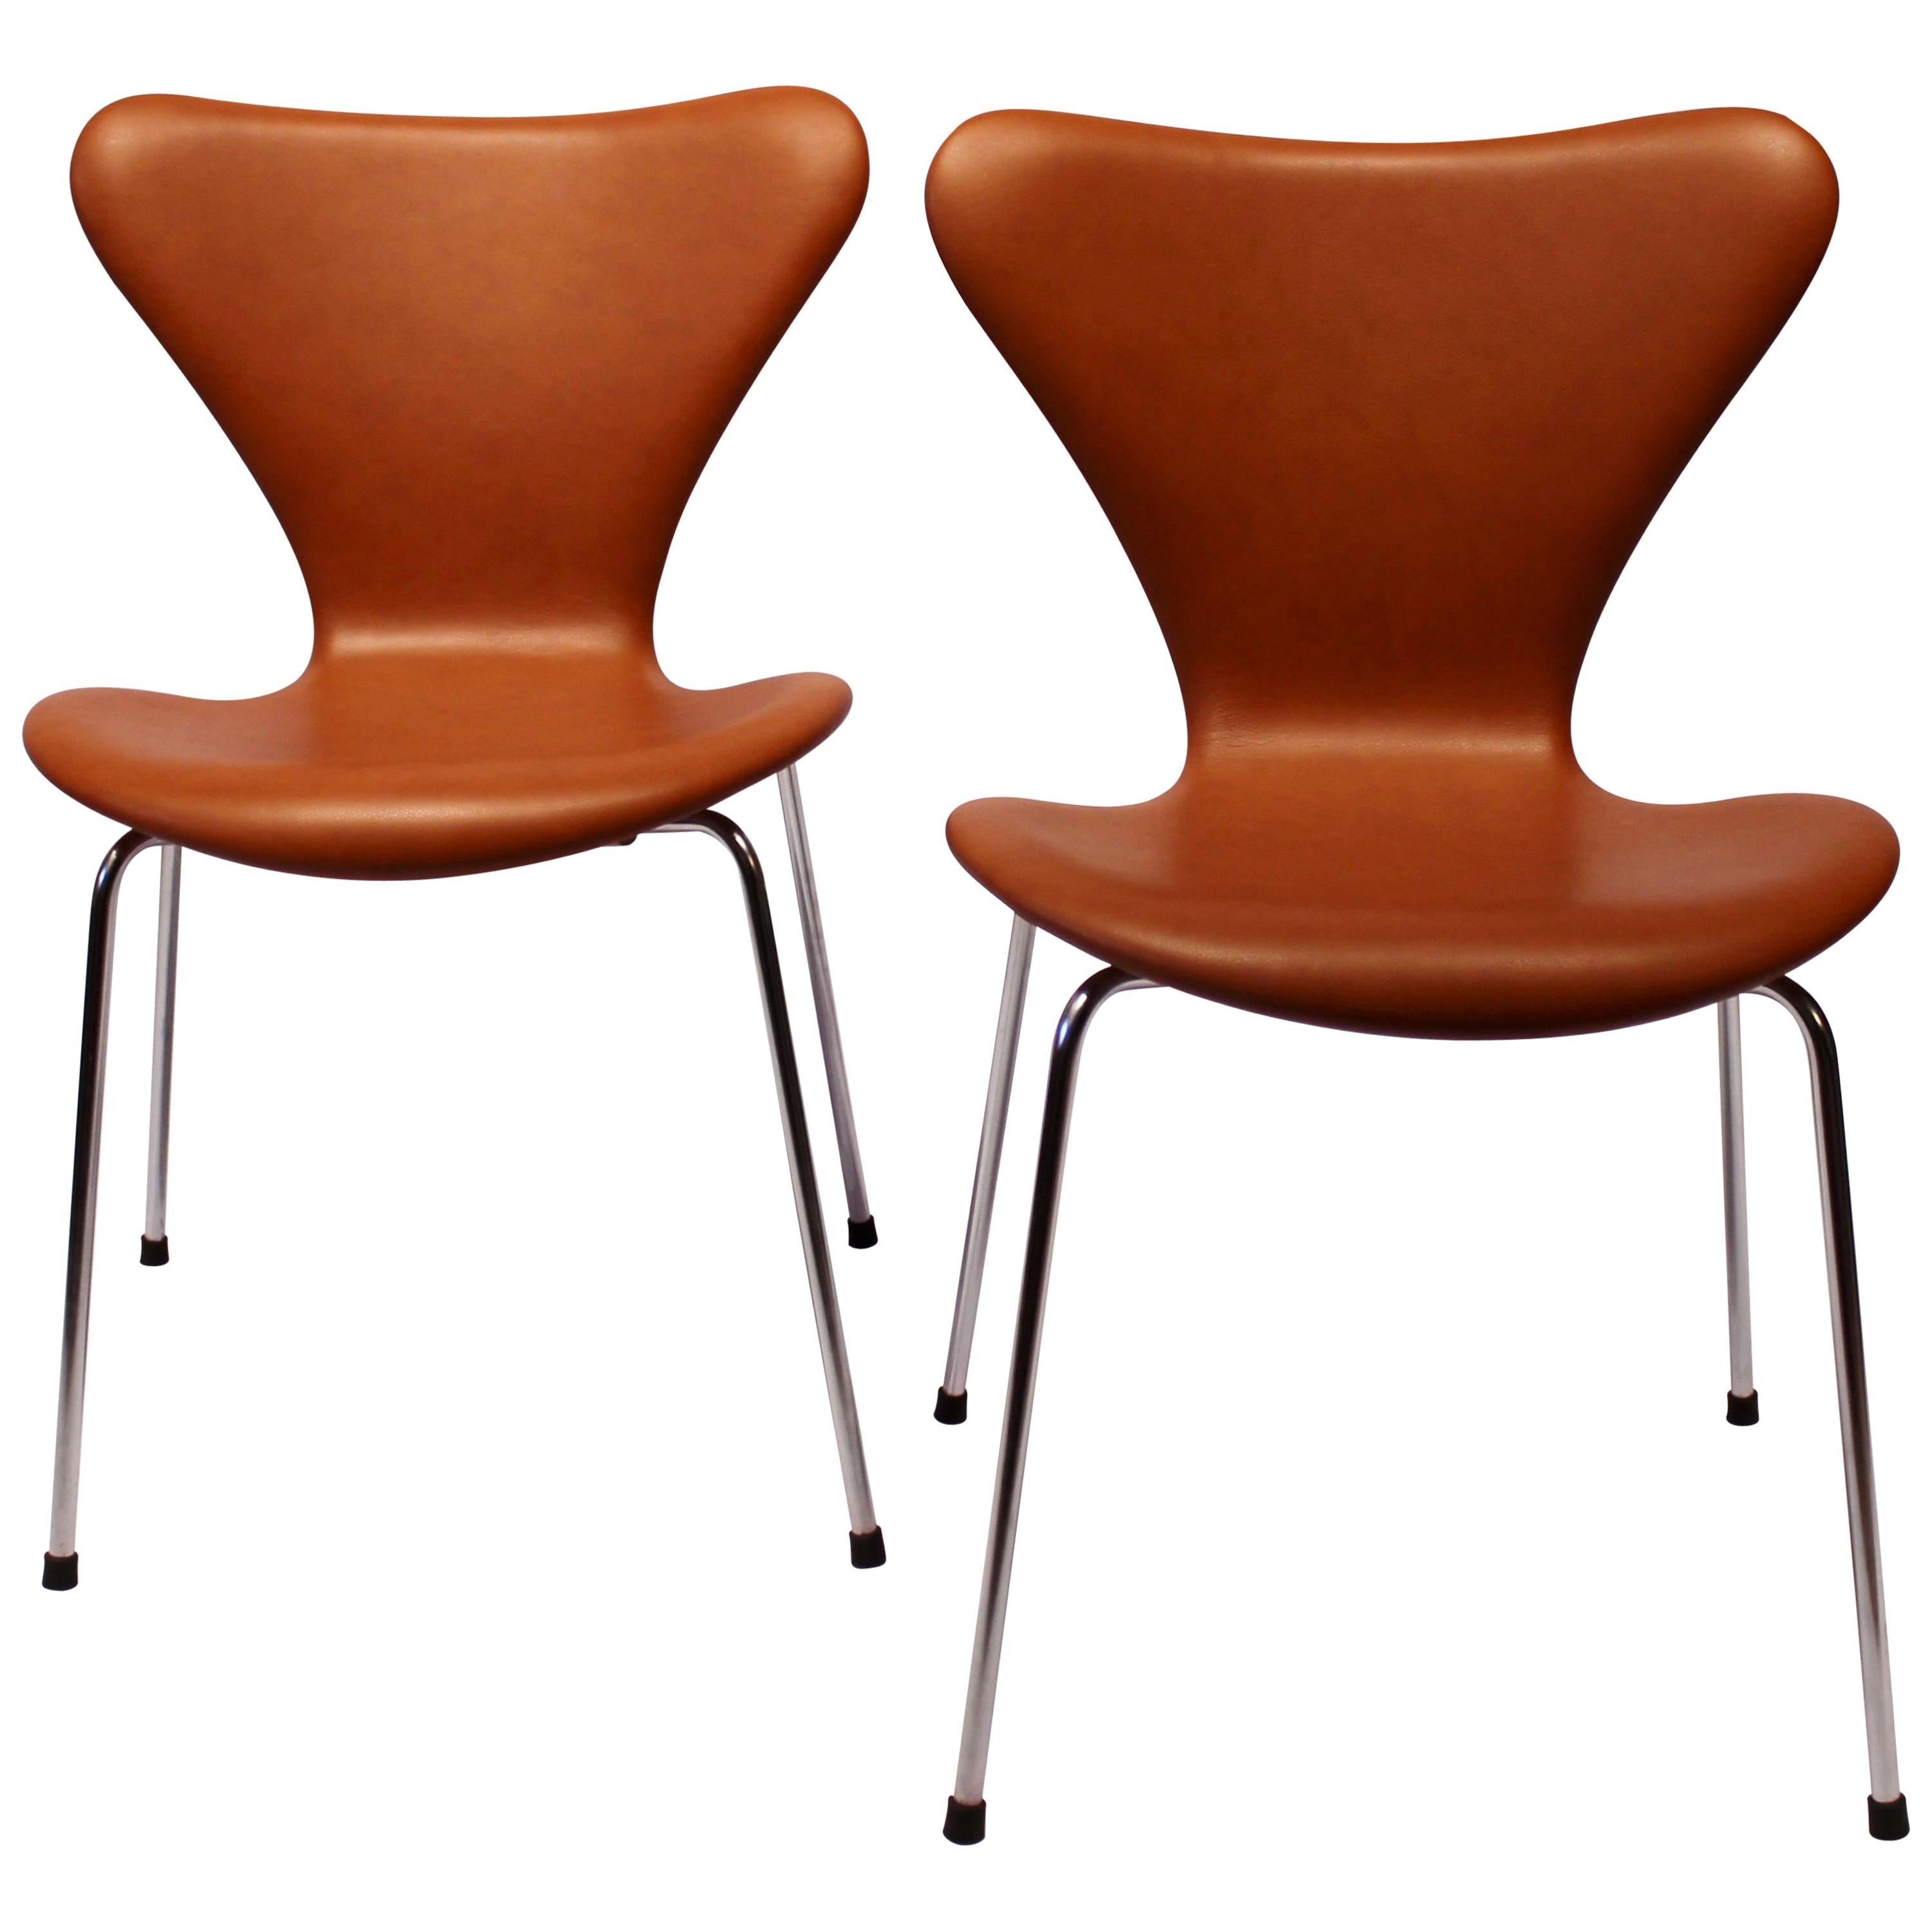 Paire de chaises Series 7, modèle 3107 en cuir Cognac Savanne d'Arne Jacobsen